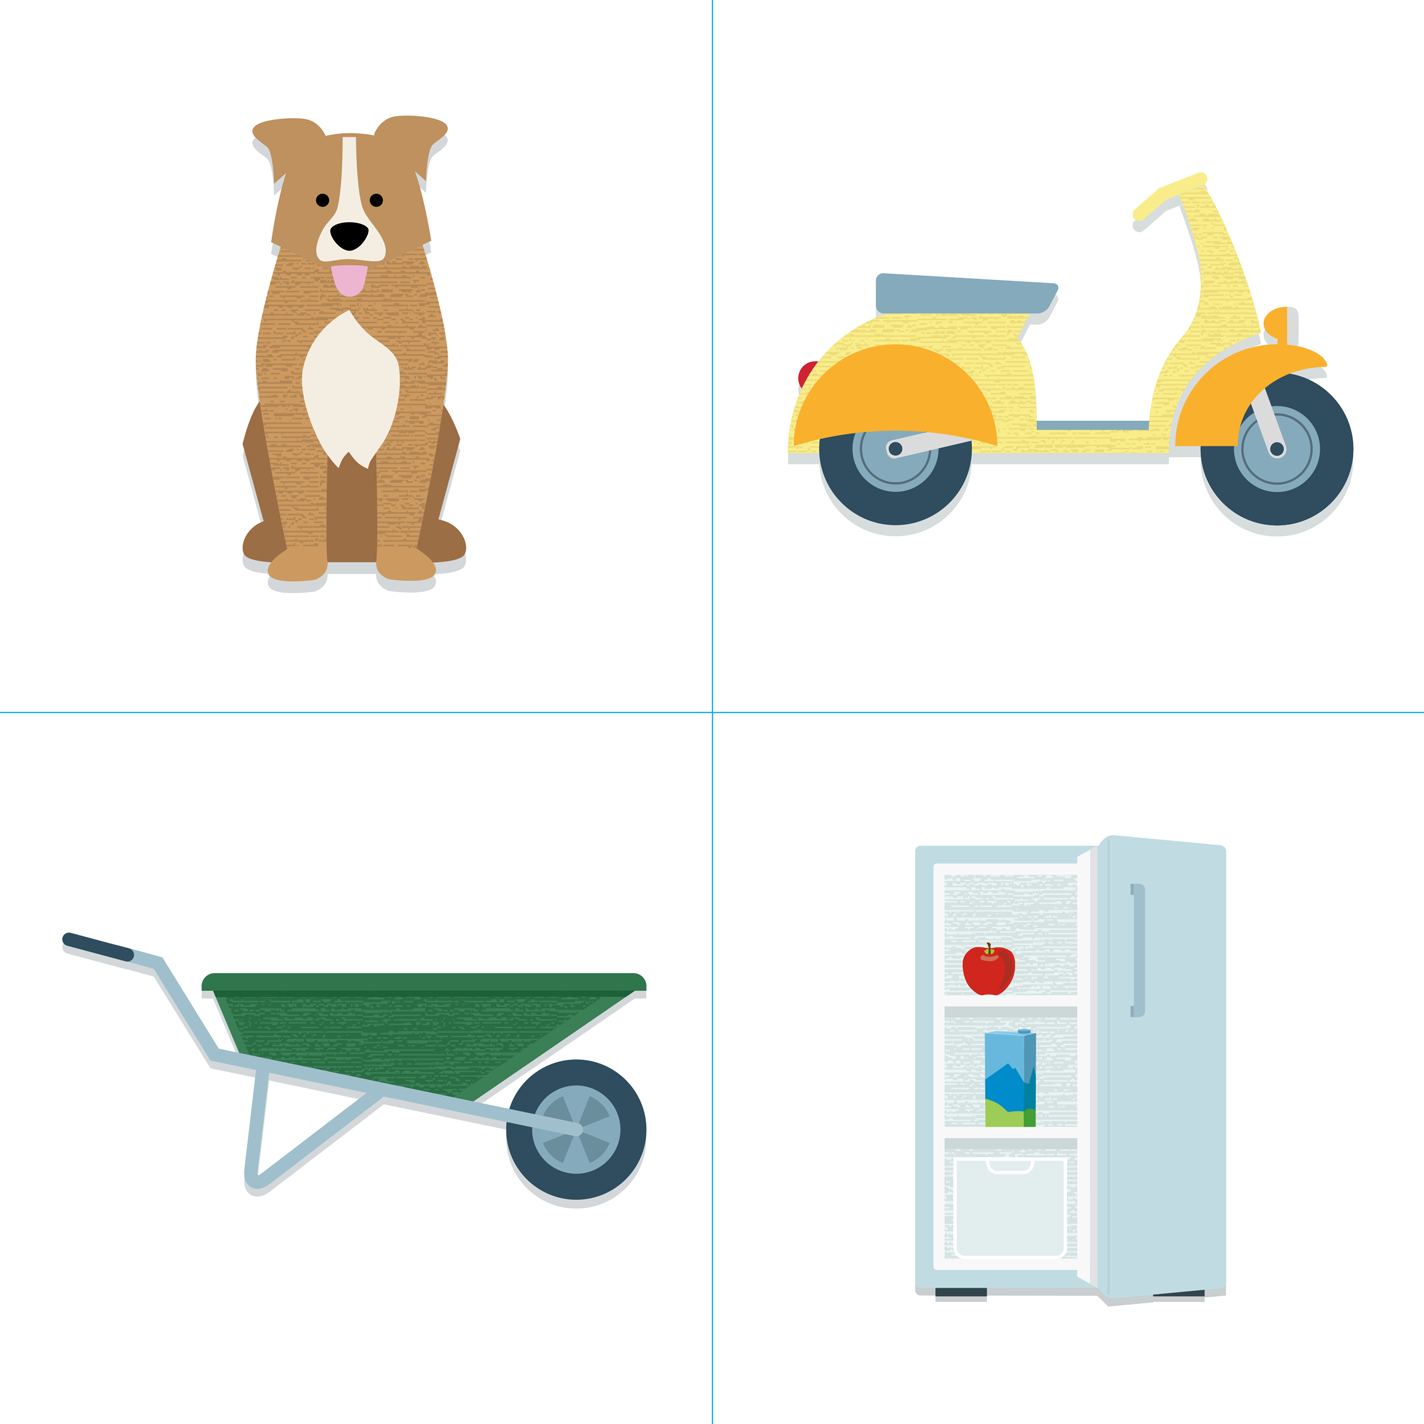 Illustrationsbeispiele von 4 Gegenständen wie Hund, Mofa, Schubkarre und Kühlschrank.